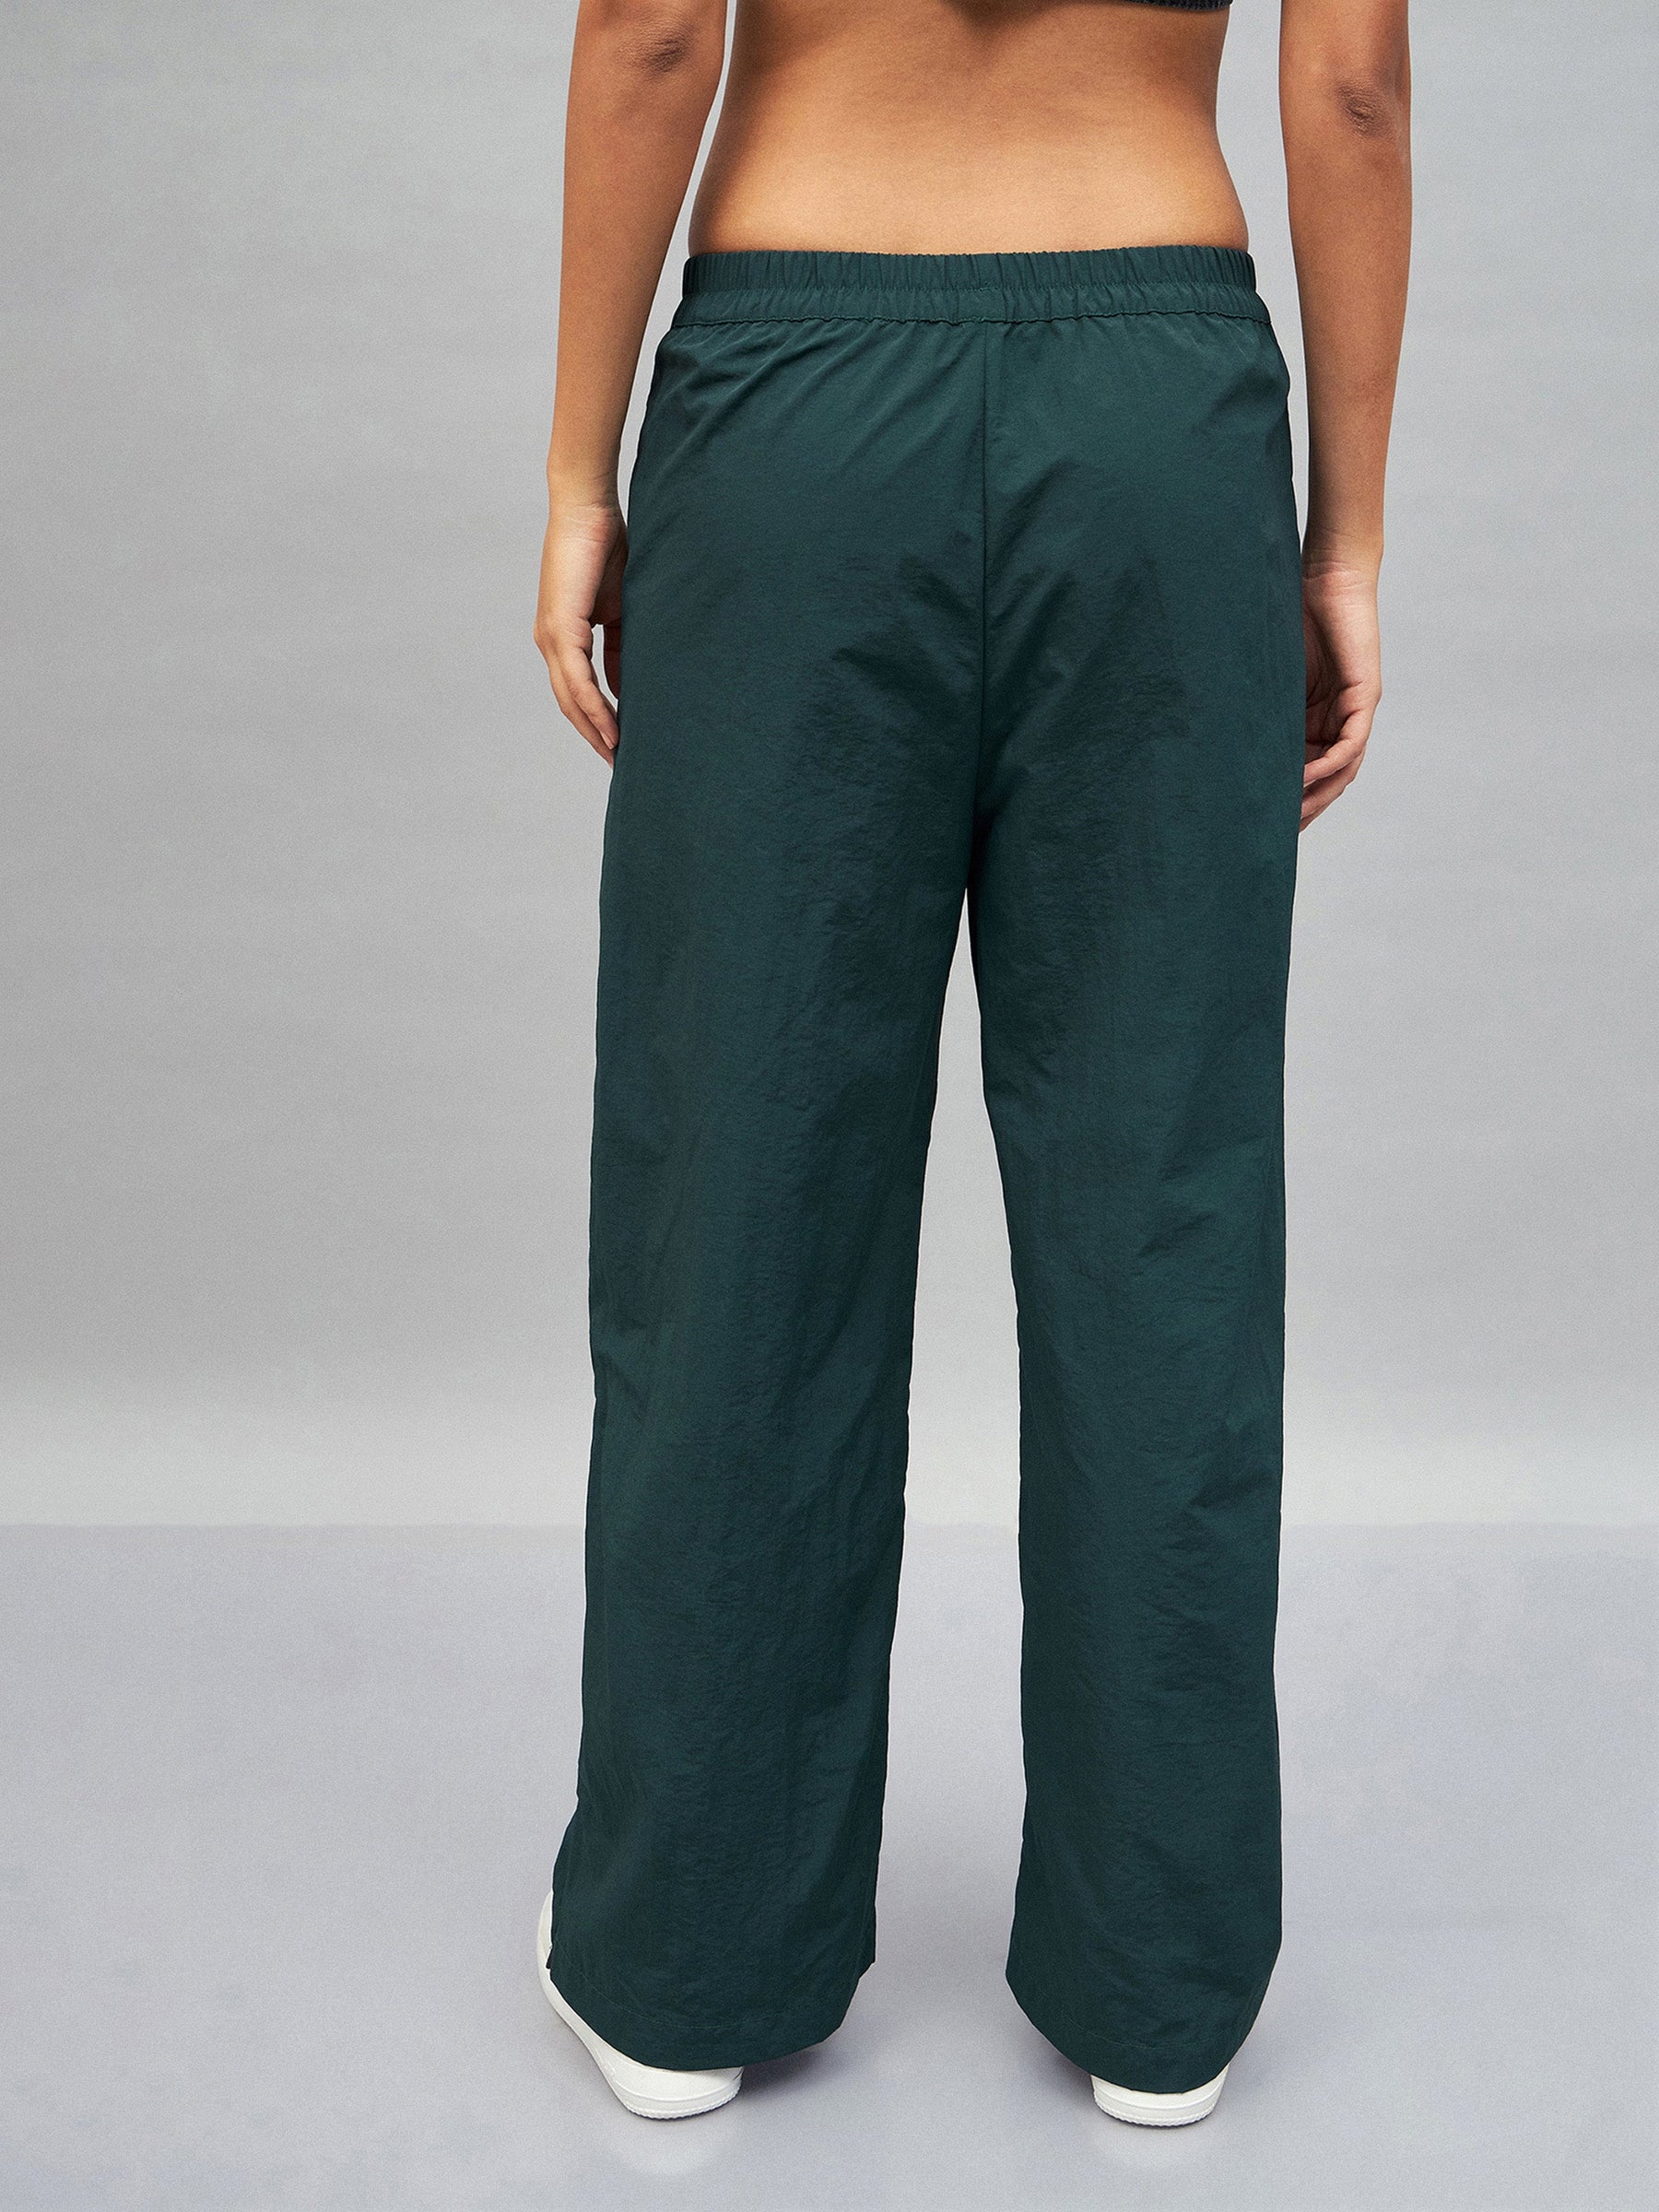 Green Out Seam Zipper Parachute Pants-SASSAFRAS